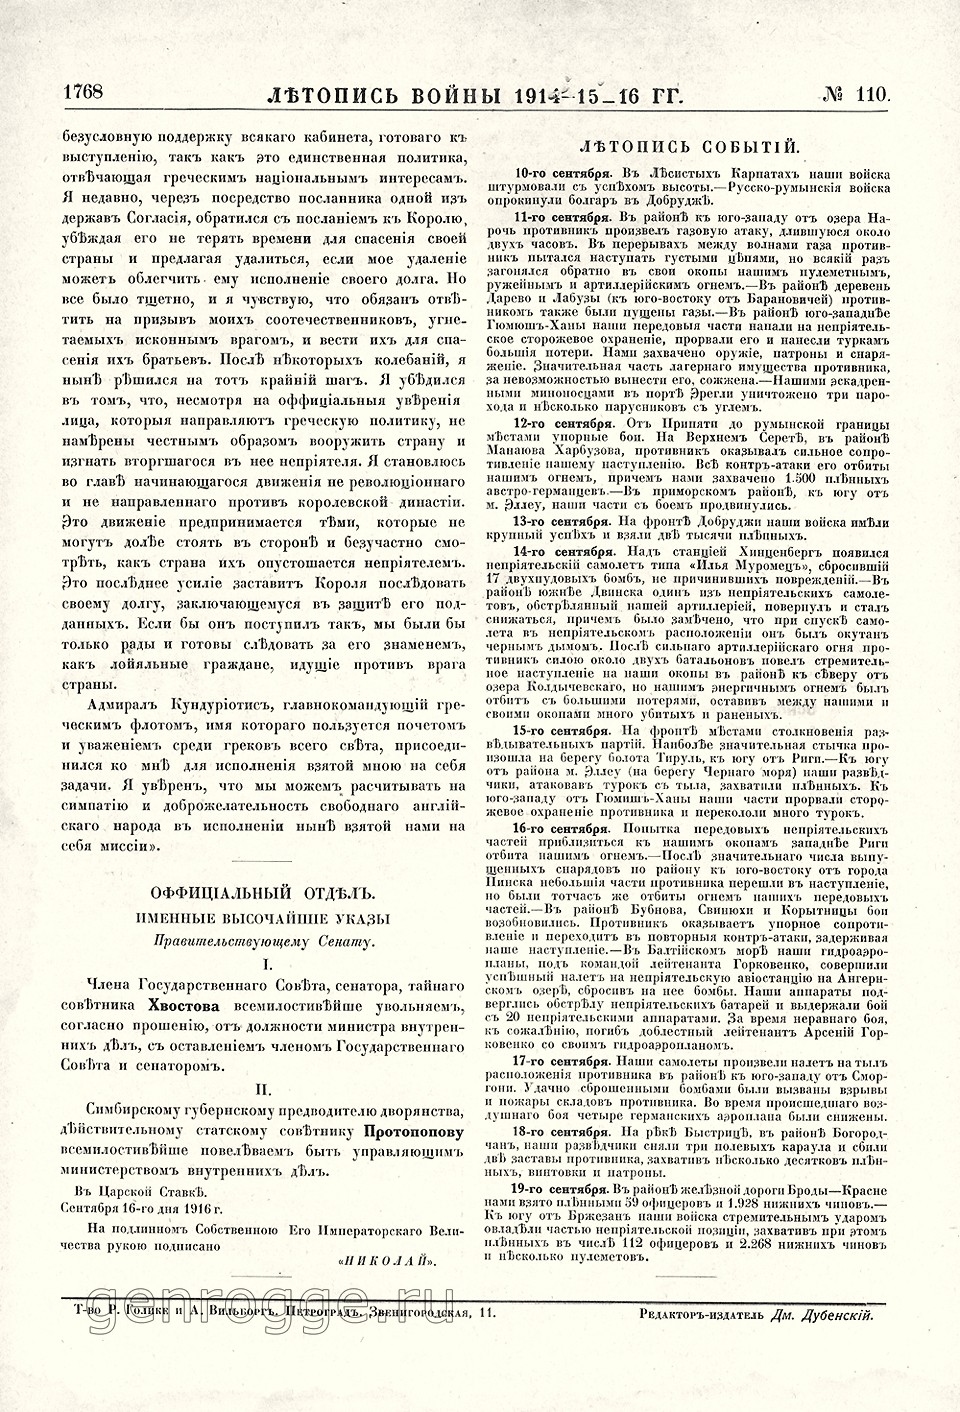   1914-15-16 . `1916 .,  110, . 1768